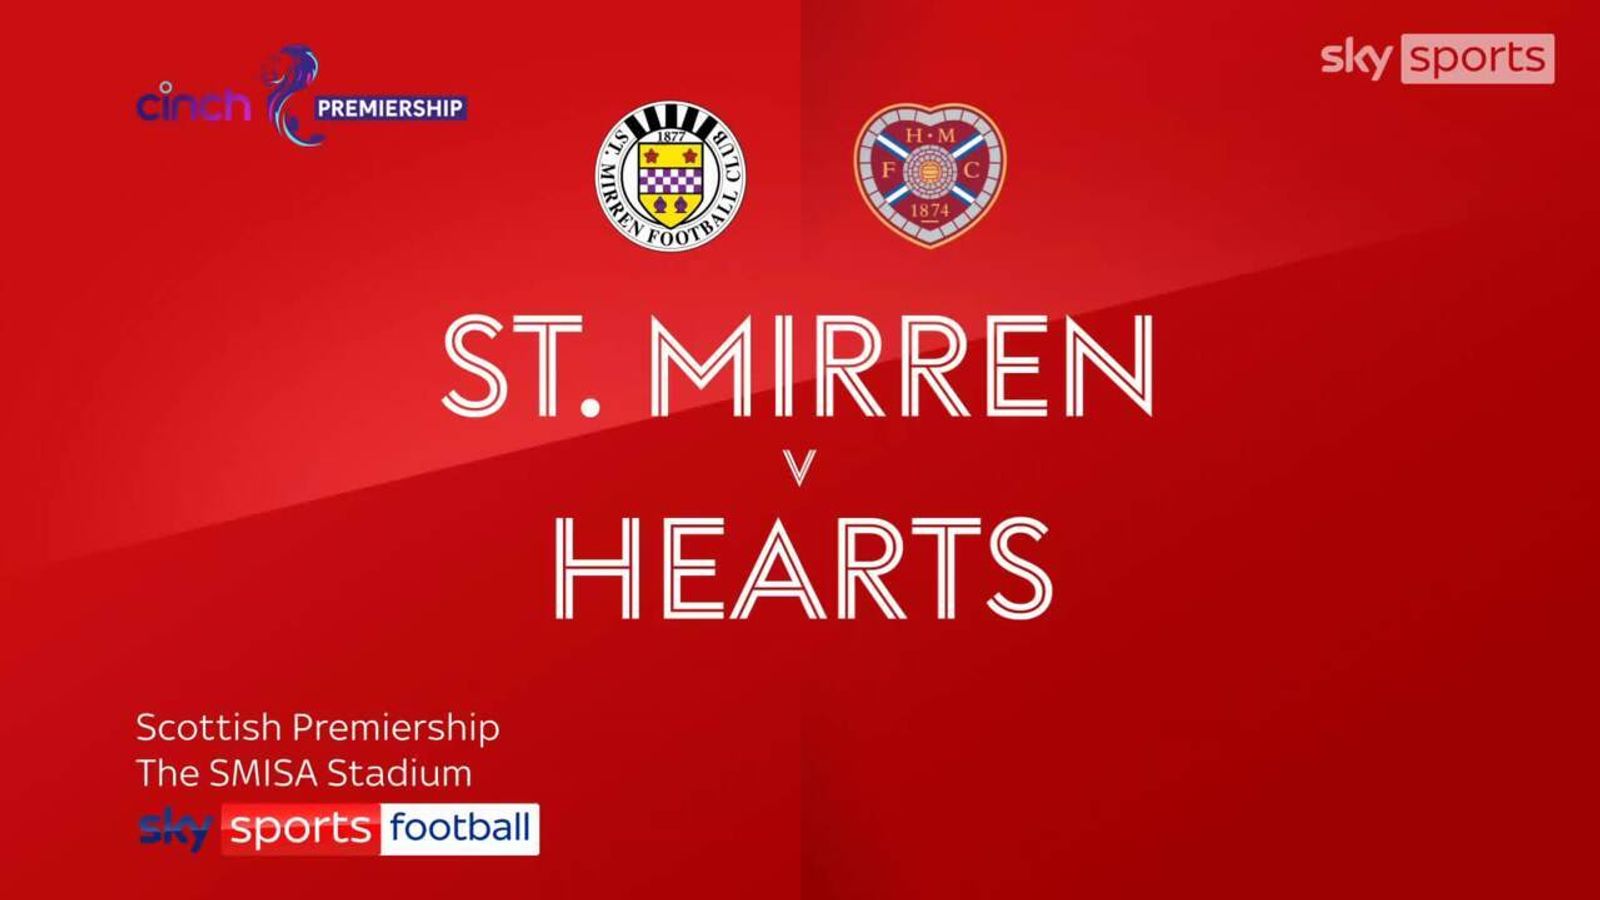 St Mirren 2-2 Hearts